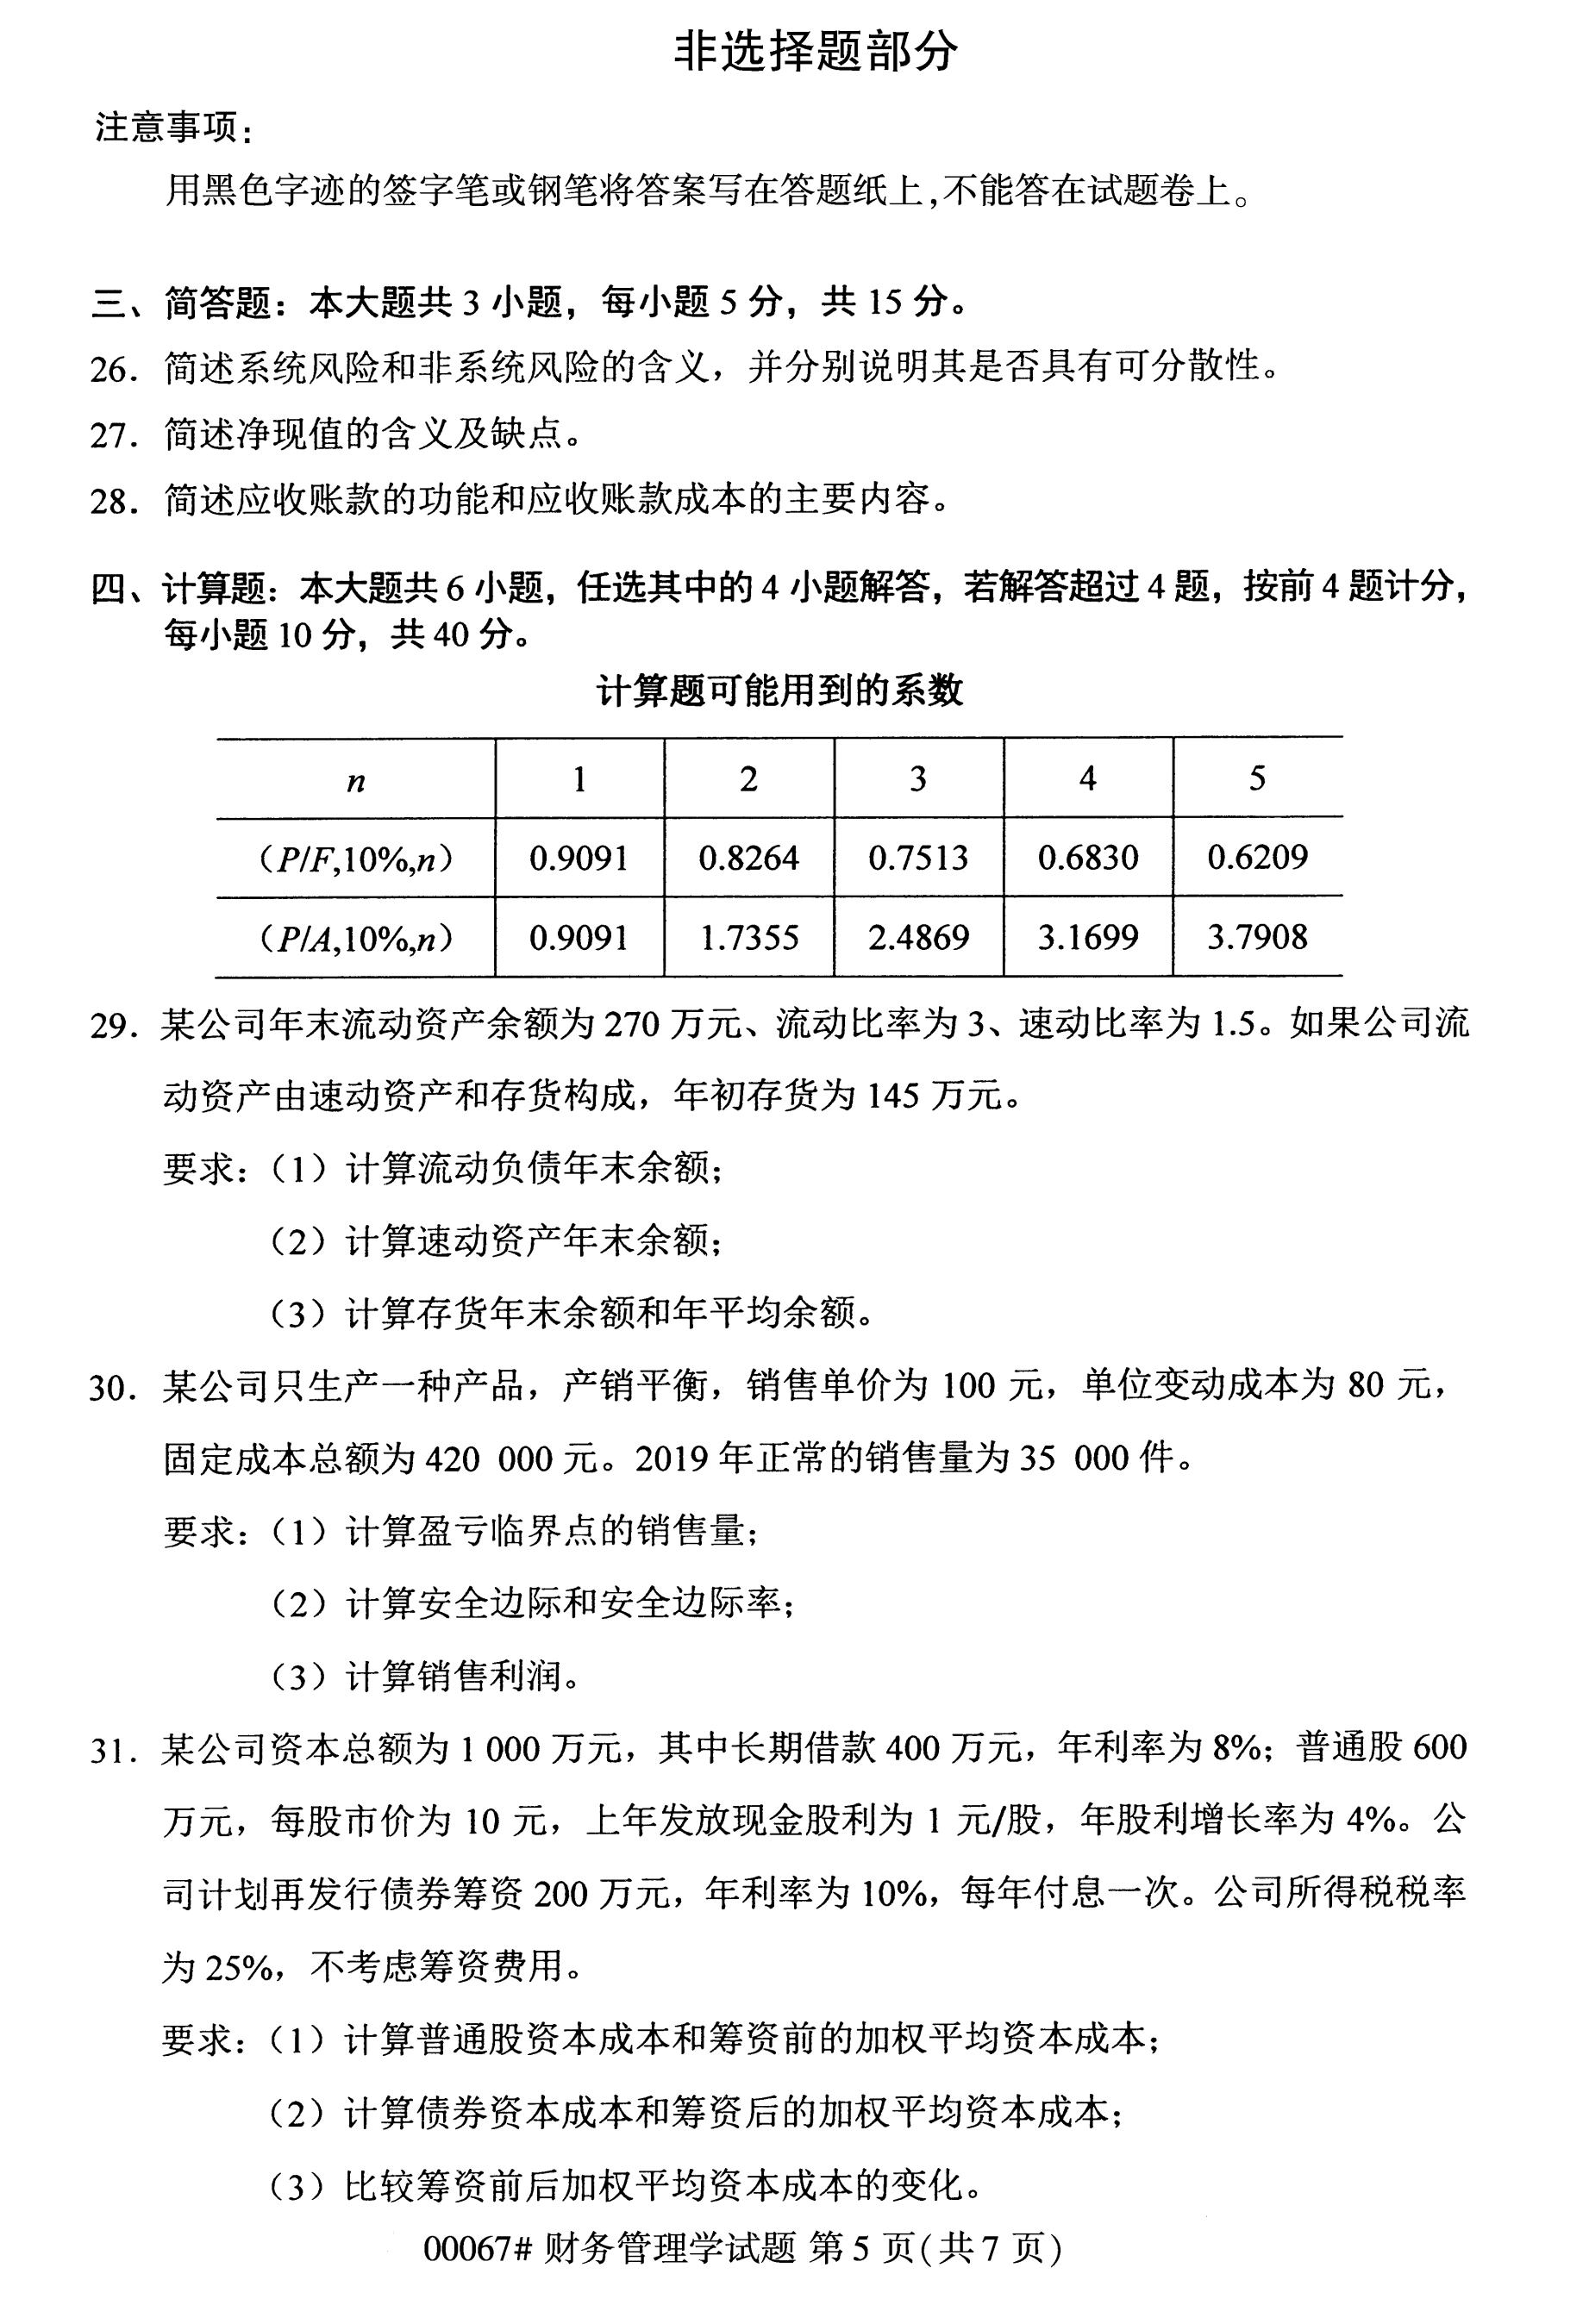 2020年10月江苏省自考本科管理类试卷试题：财务管理学(00067)